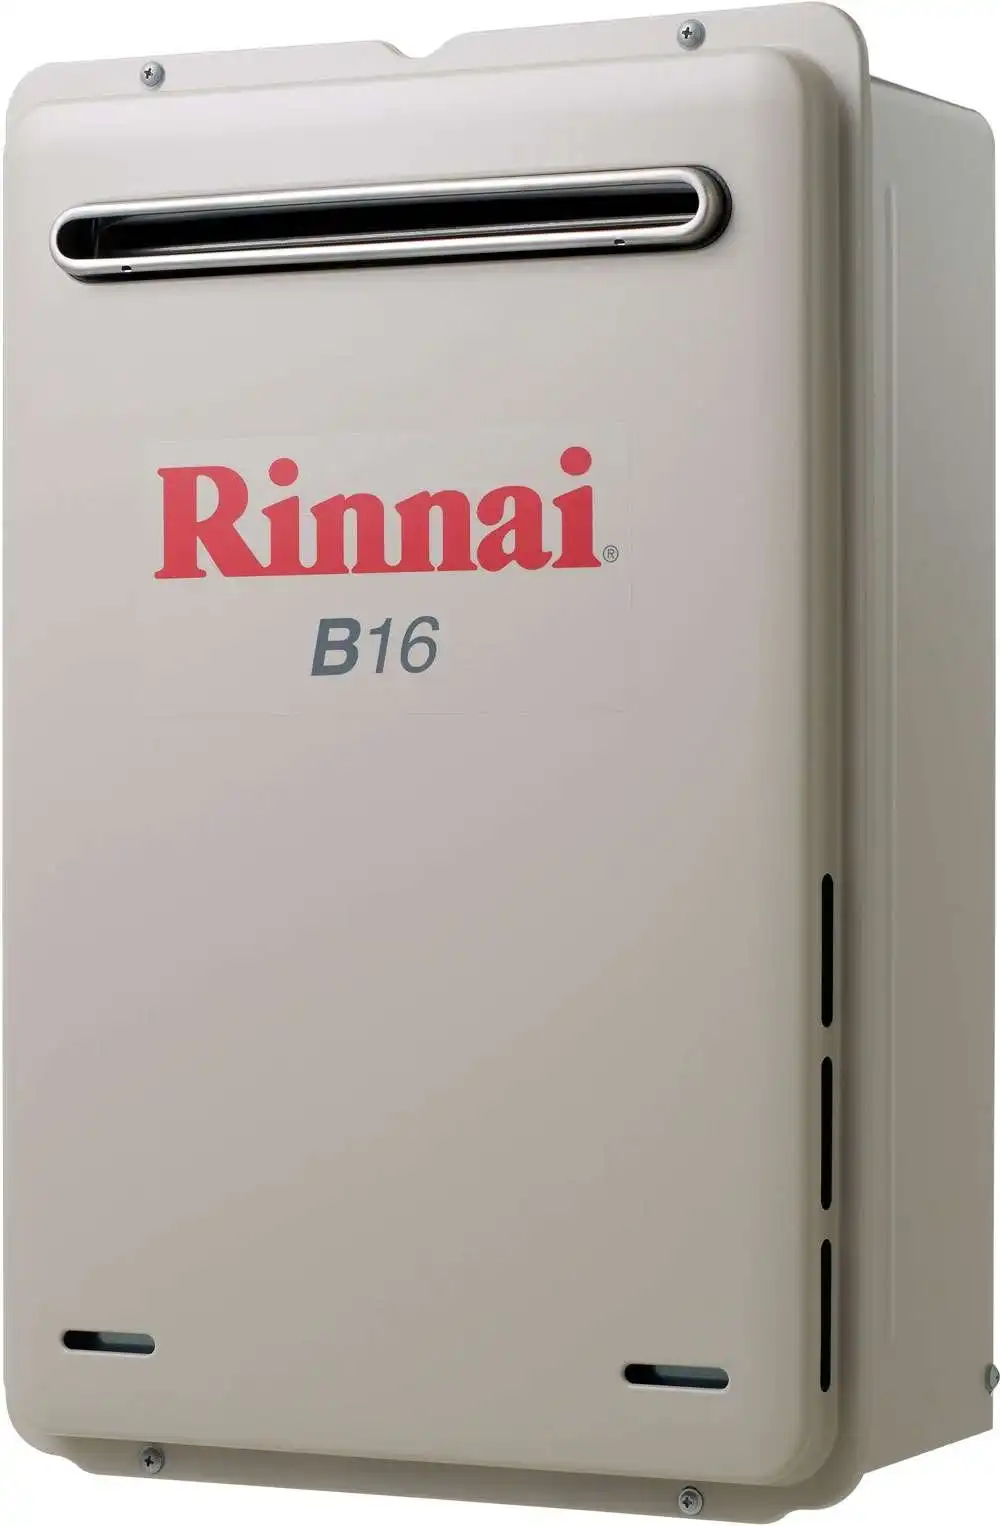 Rinnai Builders 50oC 16L Instant Hot Water System B16L50A B16 *LPG GAS*